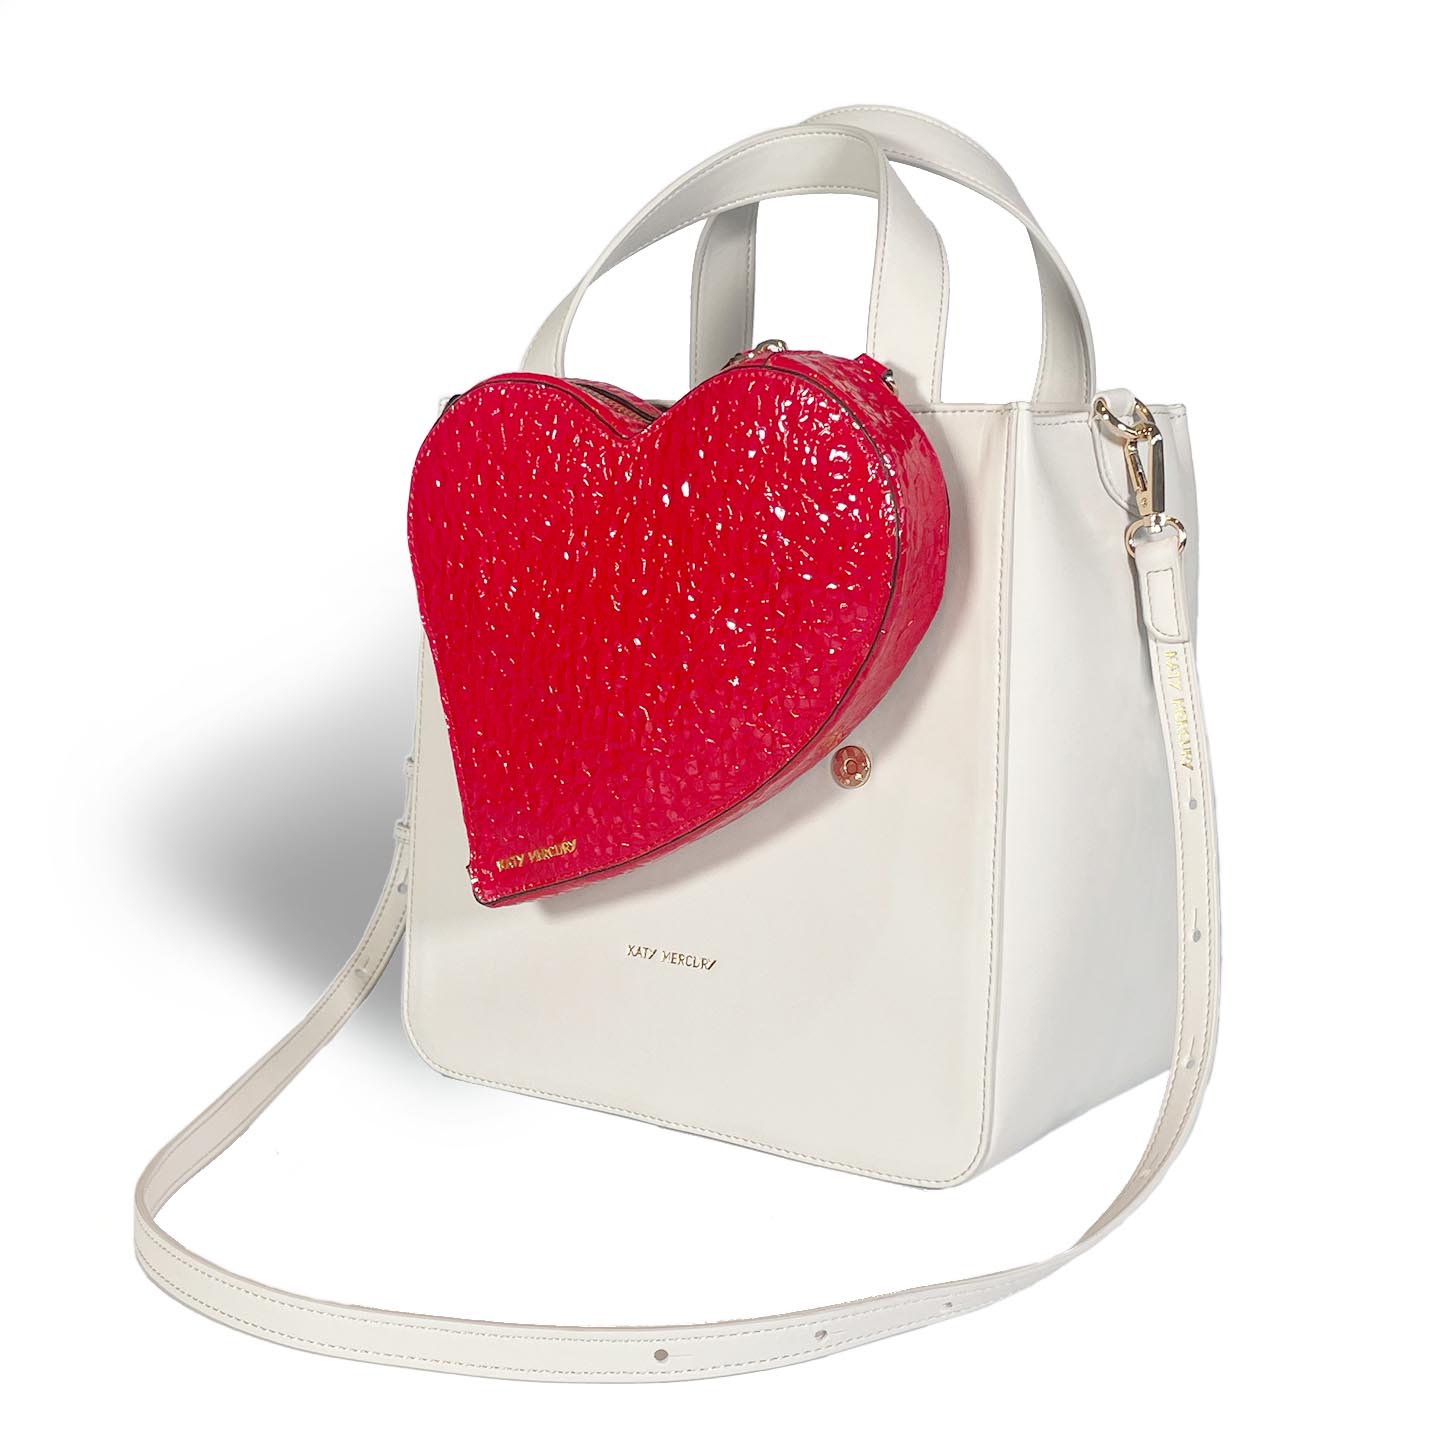 herz tasche von KATY MERCURY "heart bag" auf BUCKET BAG zum Aufsetzen als kleine Tasche auf Katy Bags